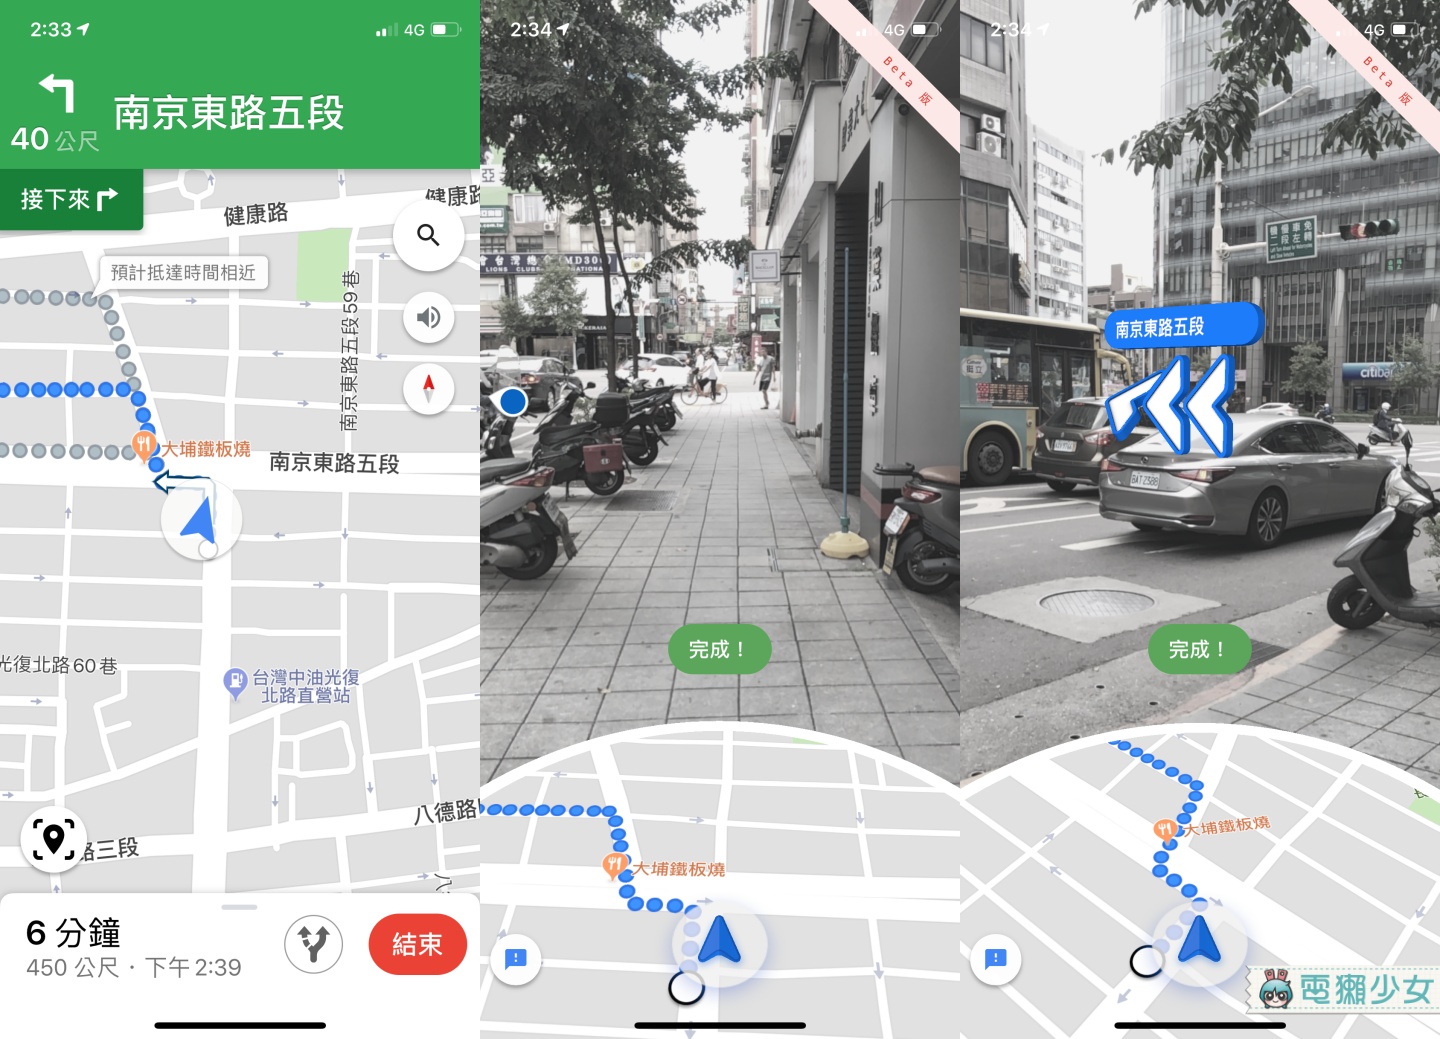 路癡救星！Google Maps 現在有 AR 實景導航功能  箭頭指標都出來了不會再走錯路了吧？